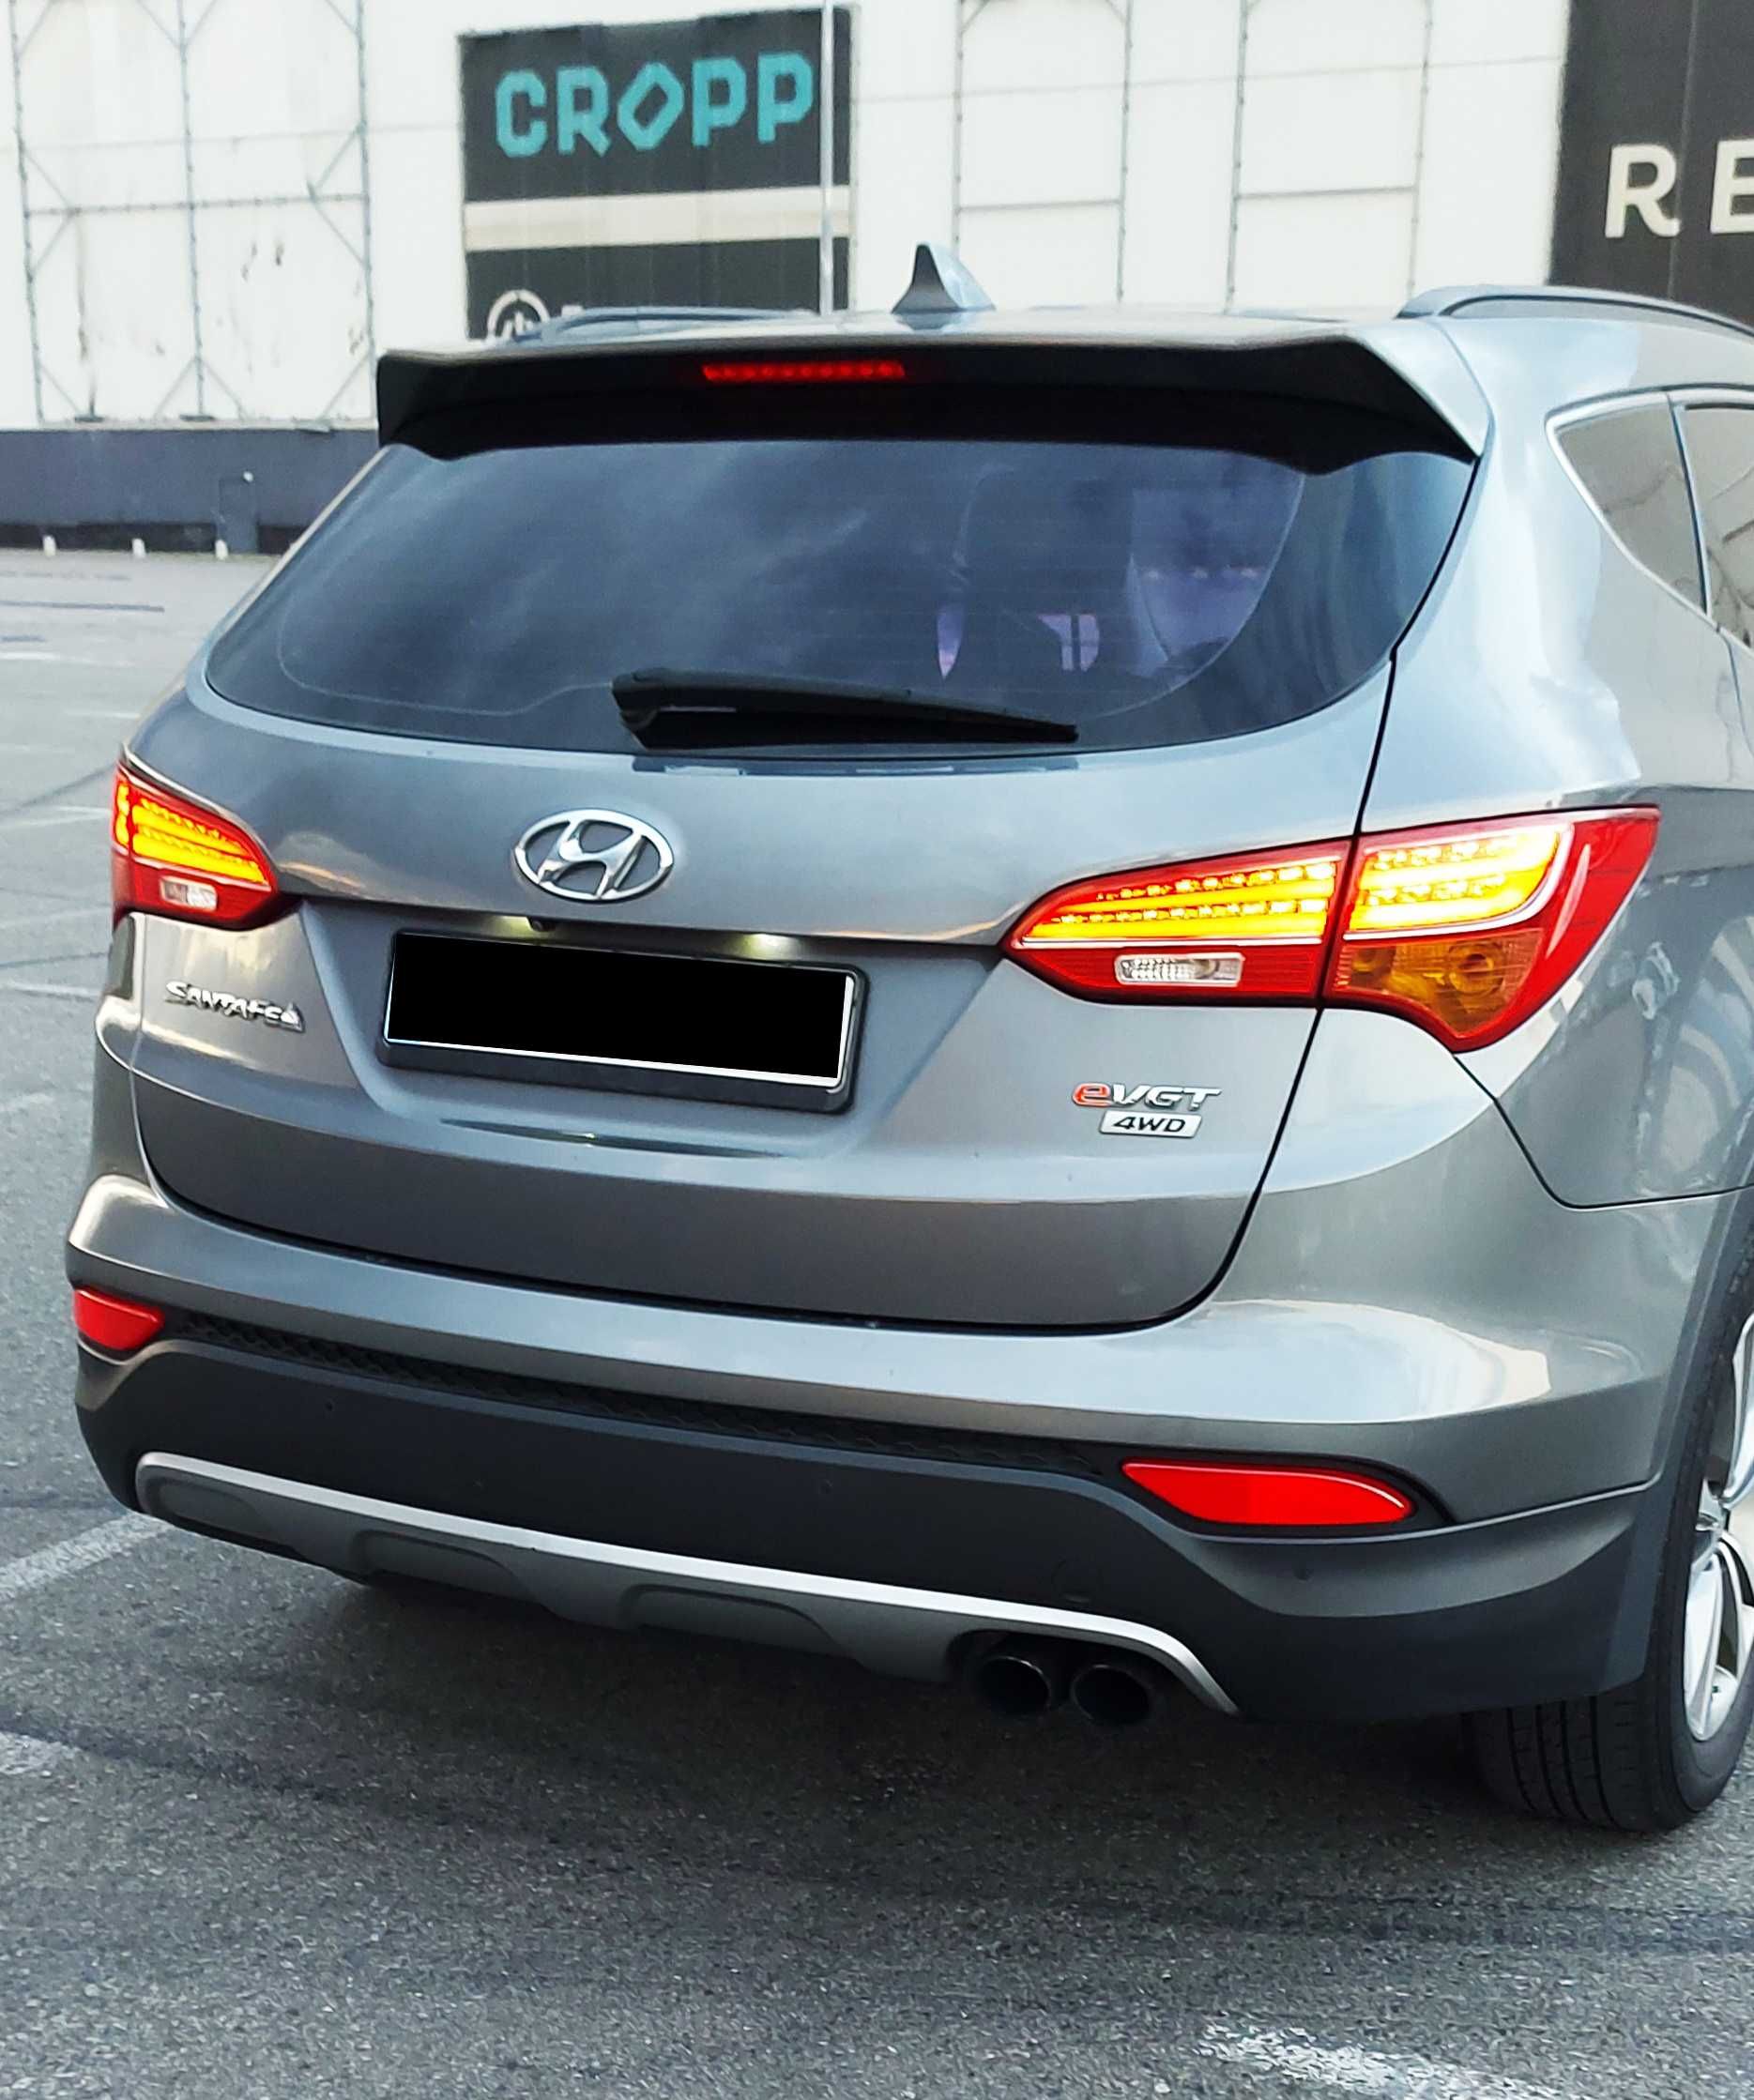 Hyundai Santa Fe 2015